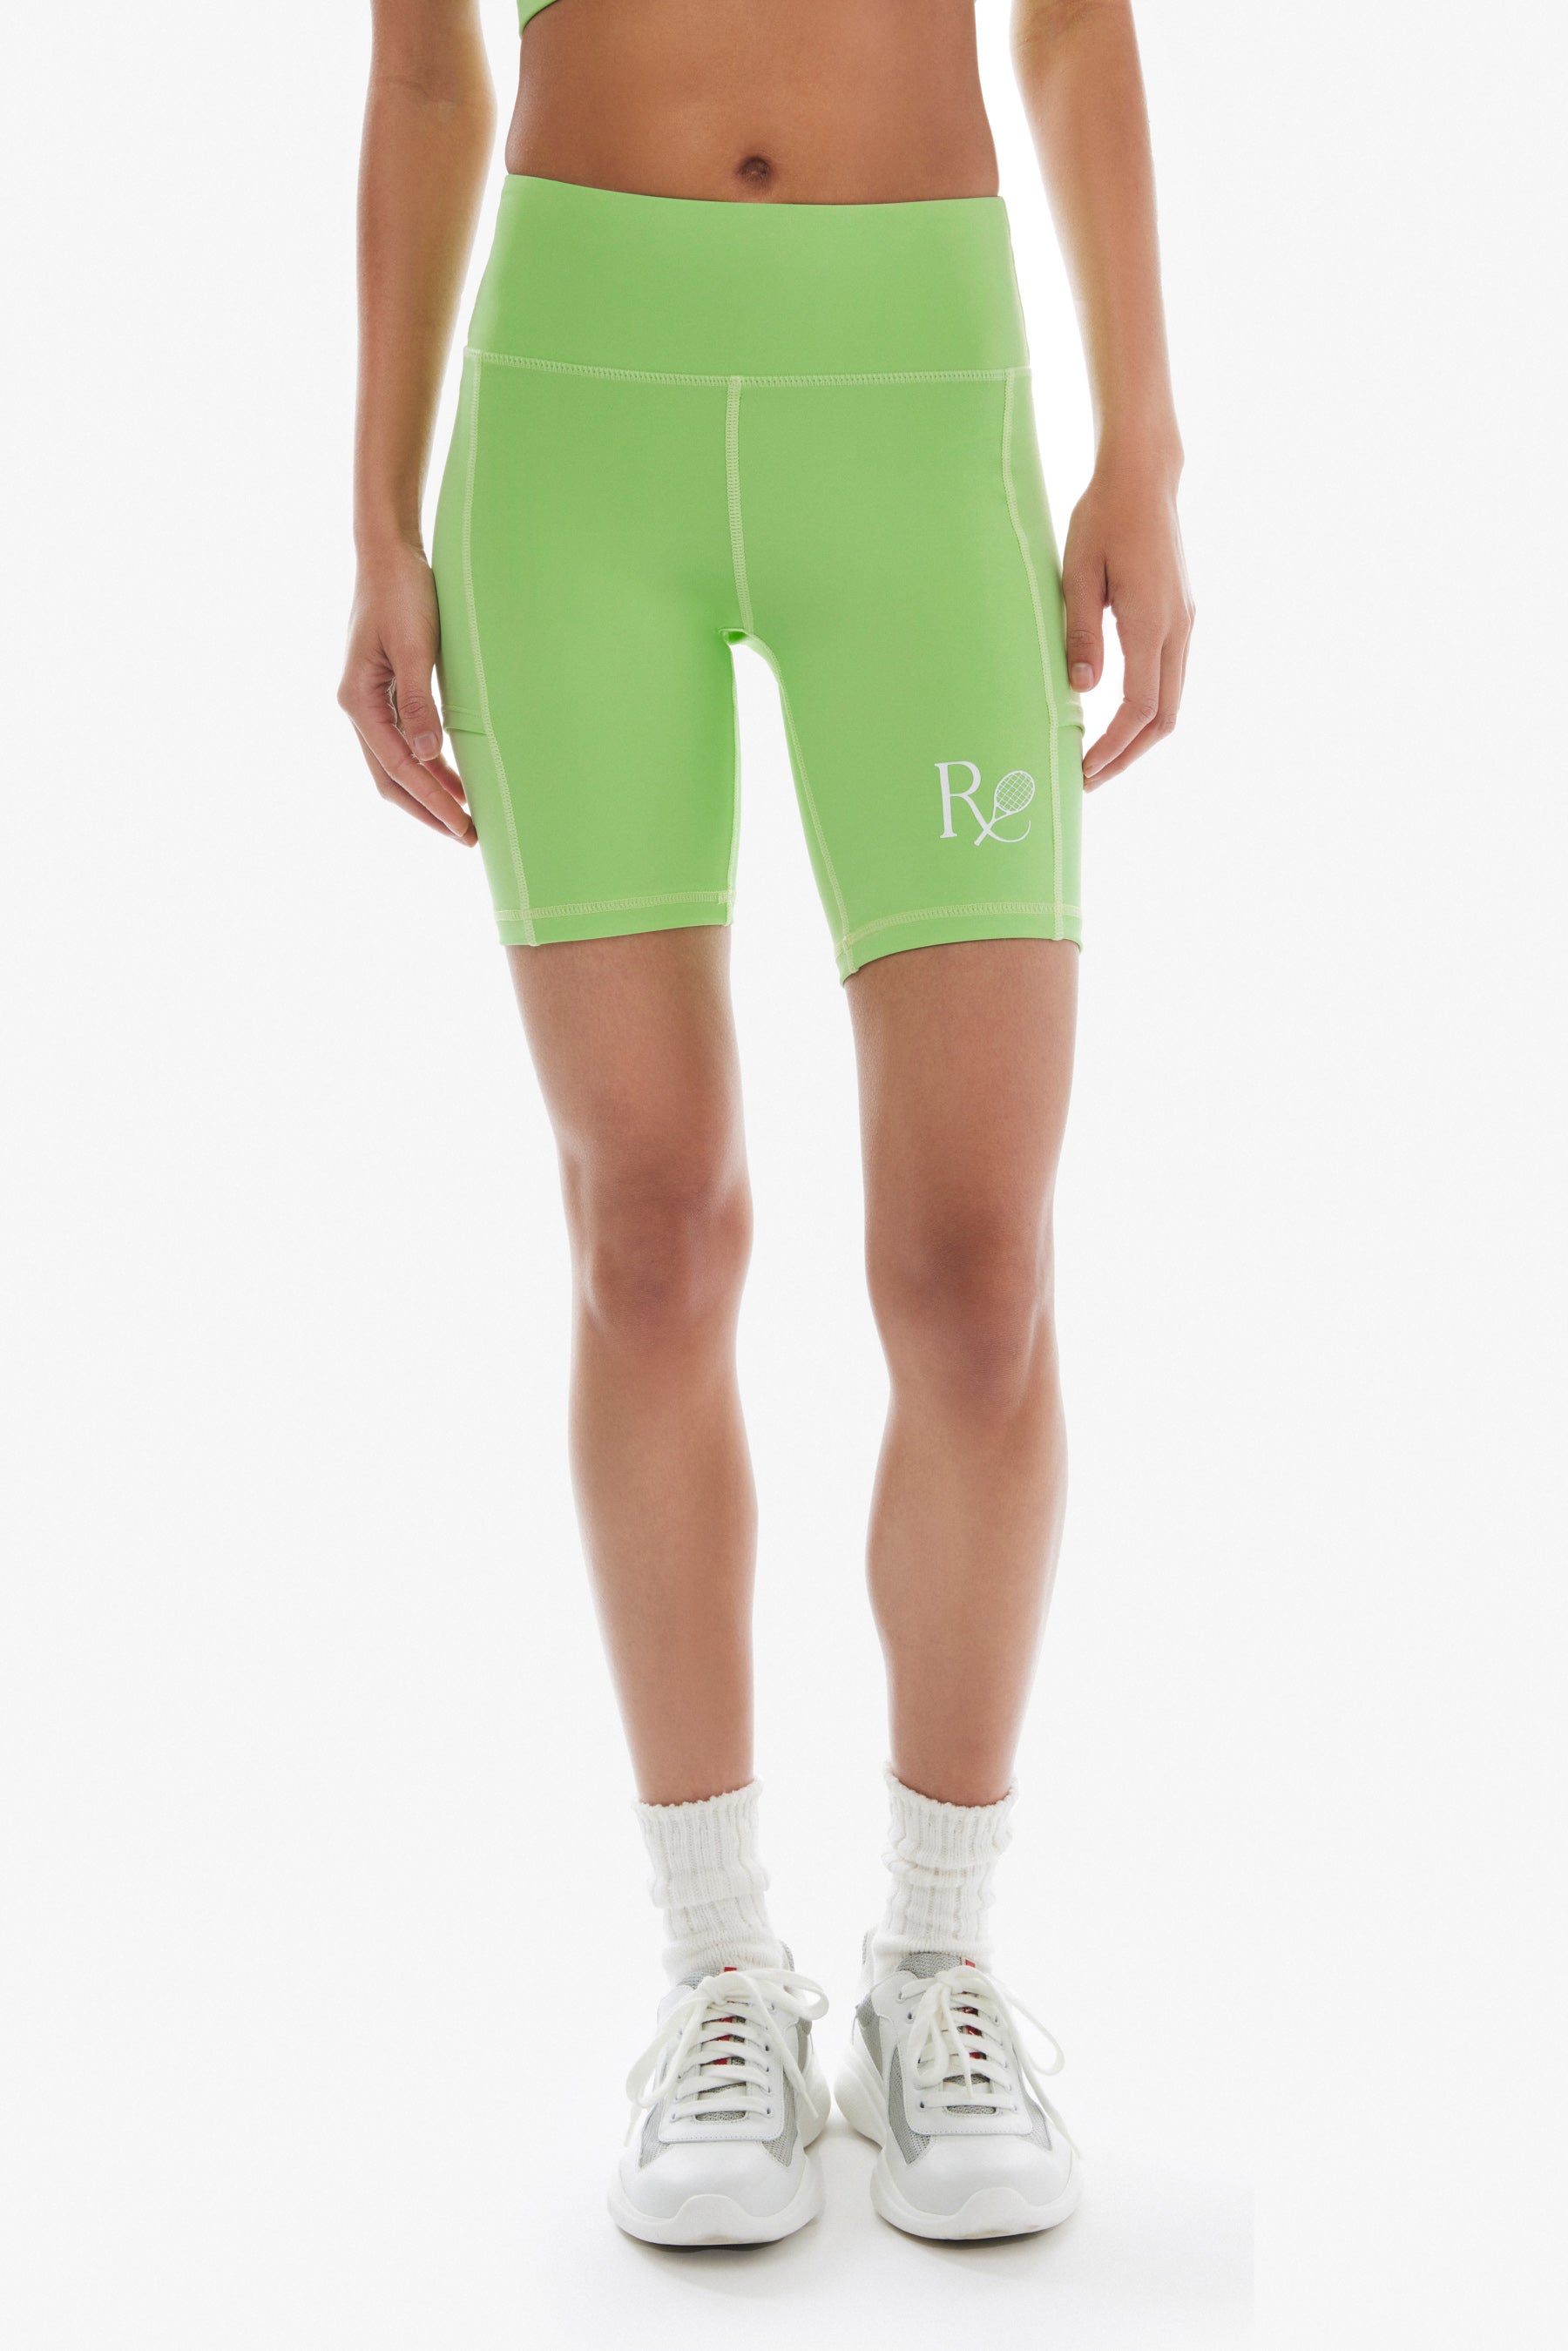 Ball Pocket Biker Shorts / Mint Green